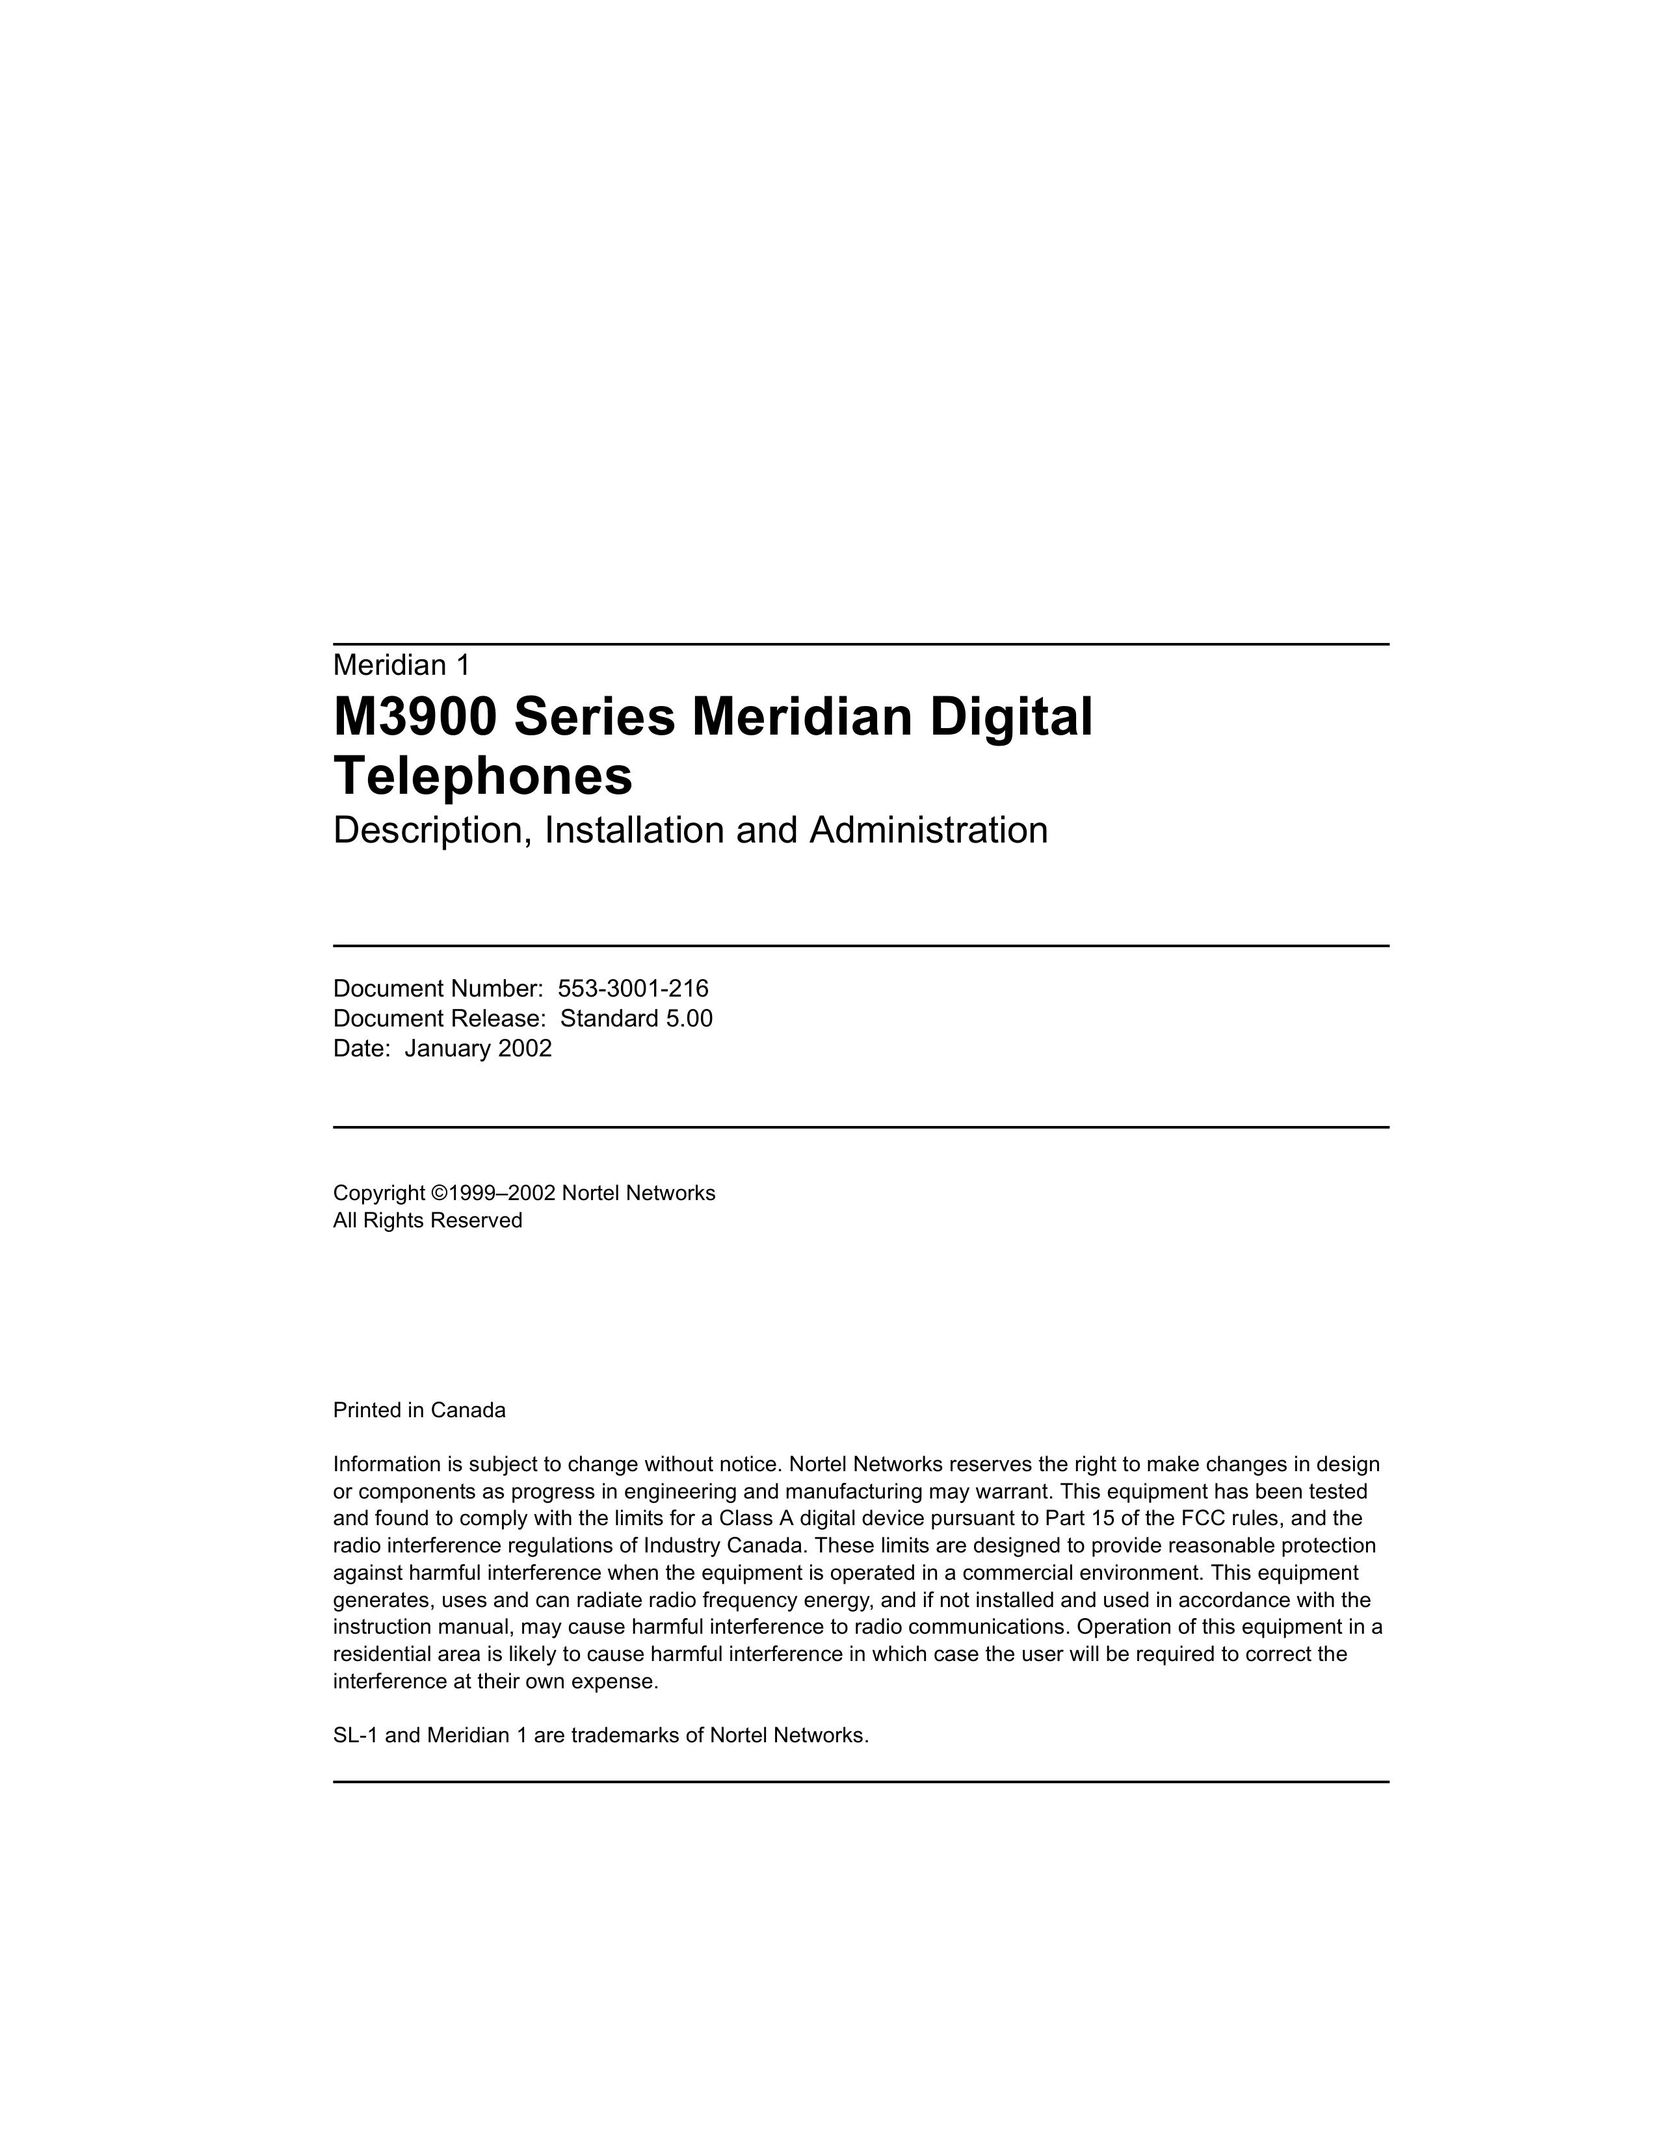 Meridian Audio M3900 Telephone User Manual